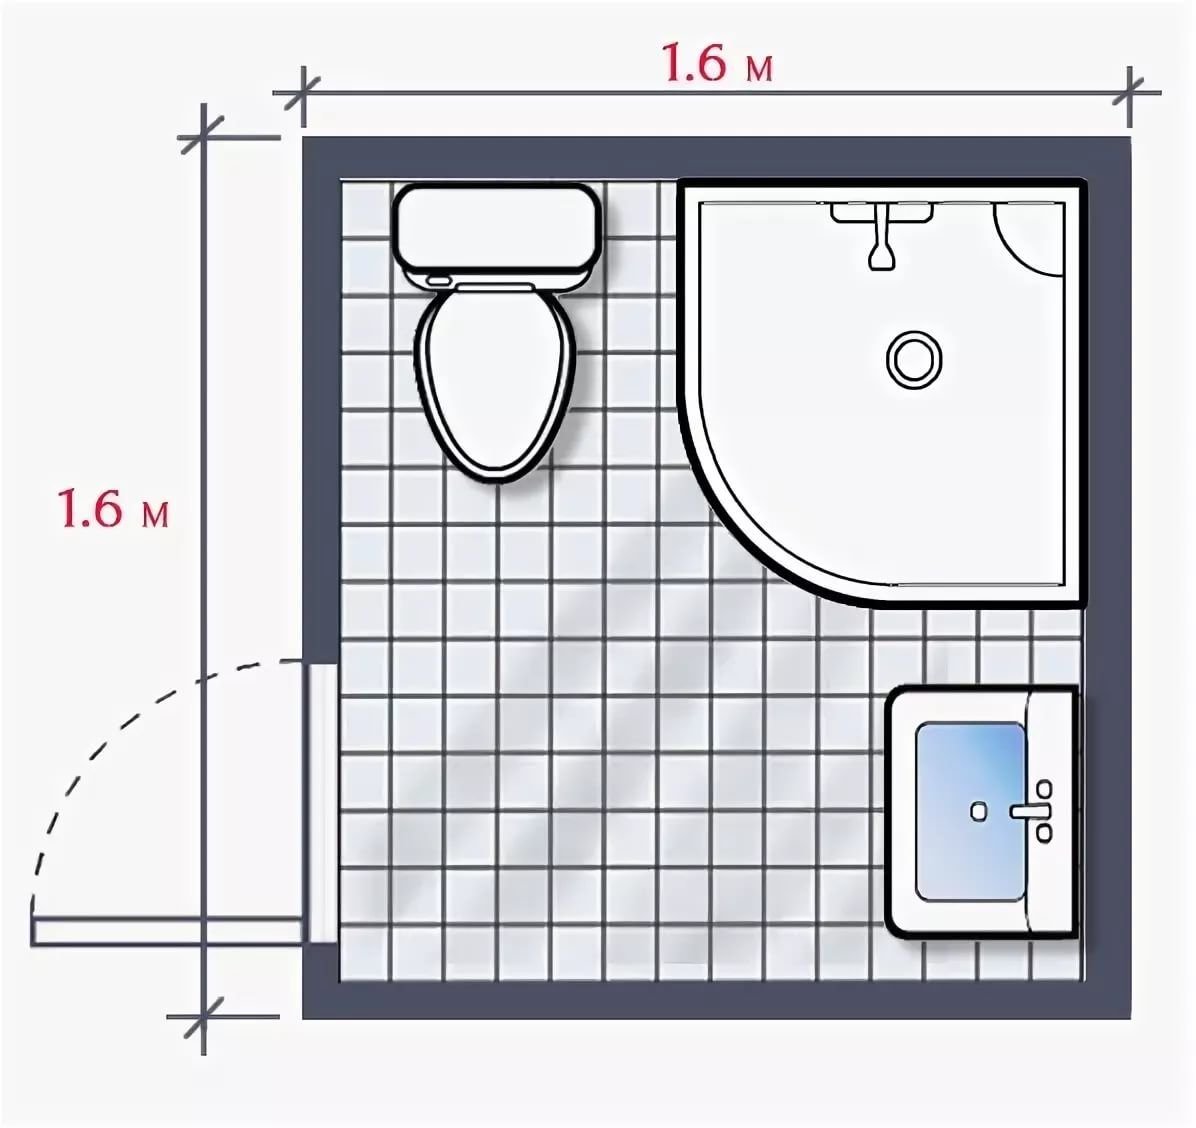 Компактная схема. Чертеж ванной комнаты с душевой кабиной 2м на2м. Схема ванной комнаты с душевой кабиной 6м2. Санузел 2м2 планировка с душевой. Санузел 2,7м2 планировка с душевой.